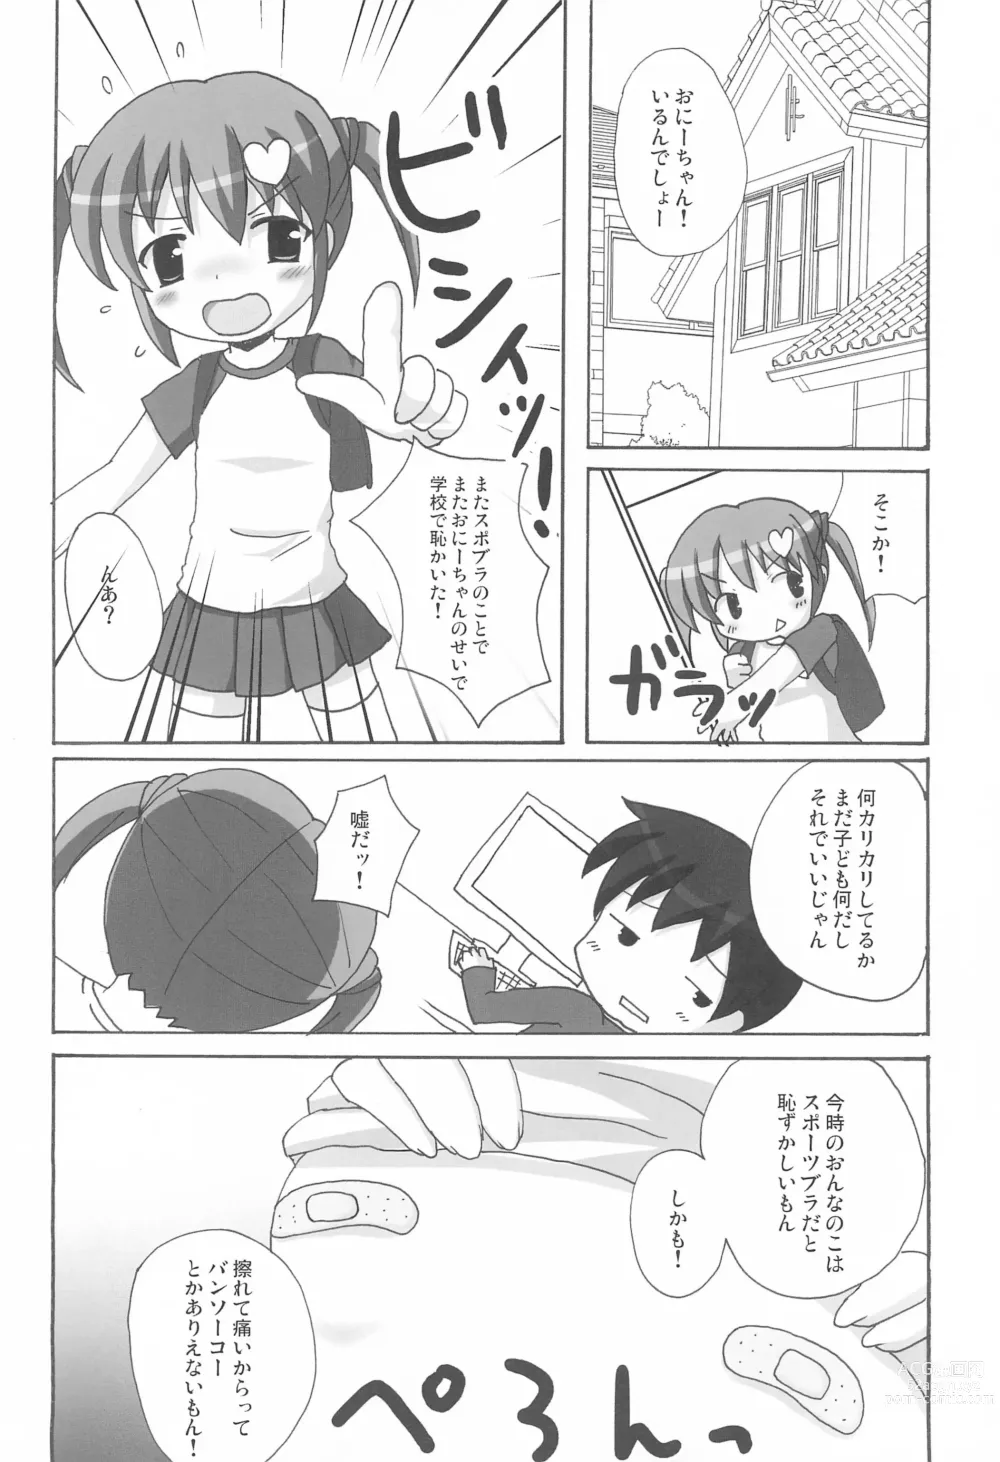 Page 8 of doujinshi Twintail na Onnanoko Hon 7.8.9 Tsumechaimashita.